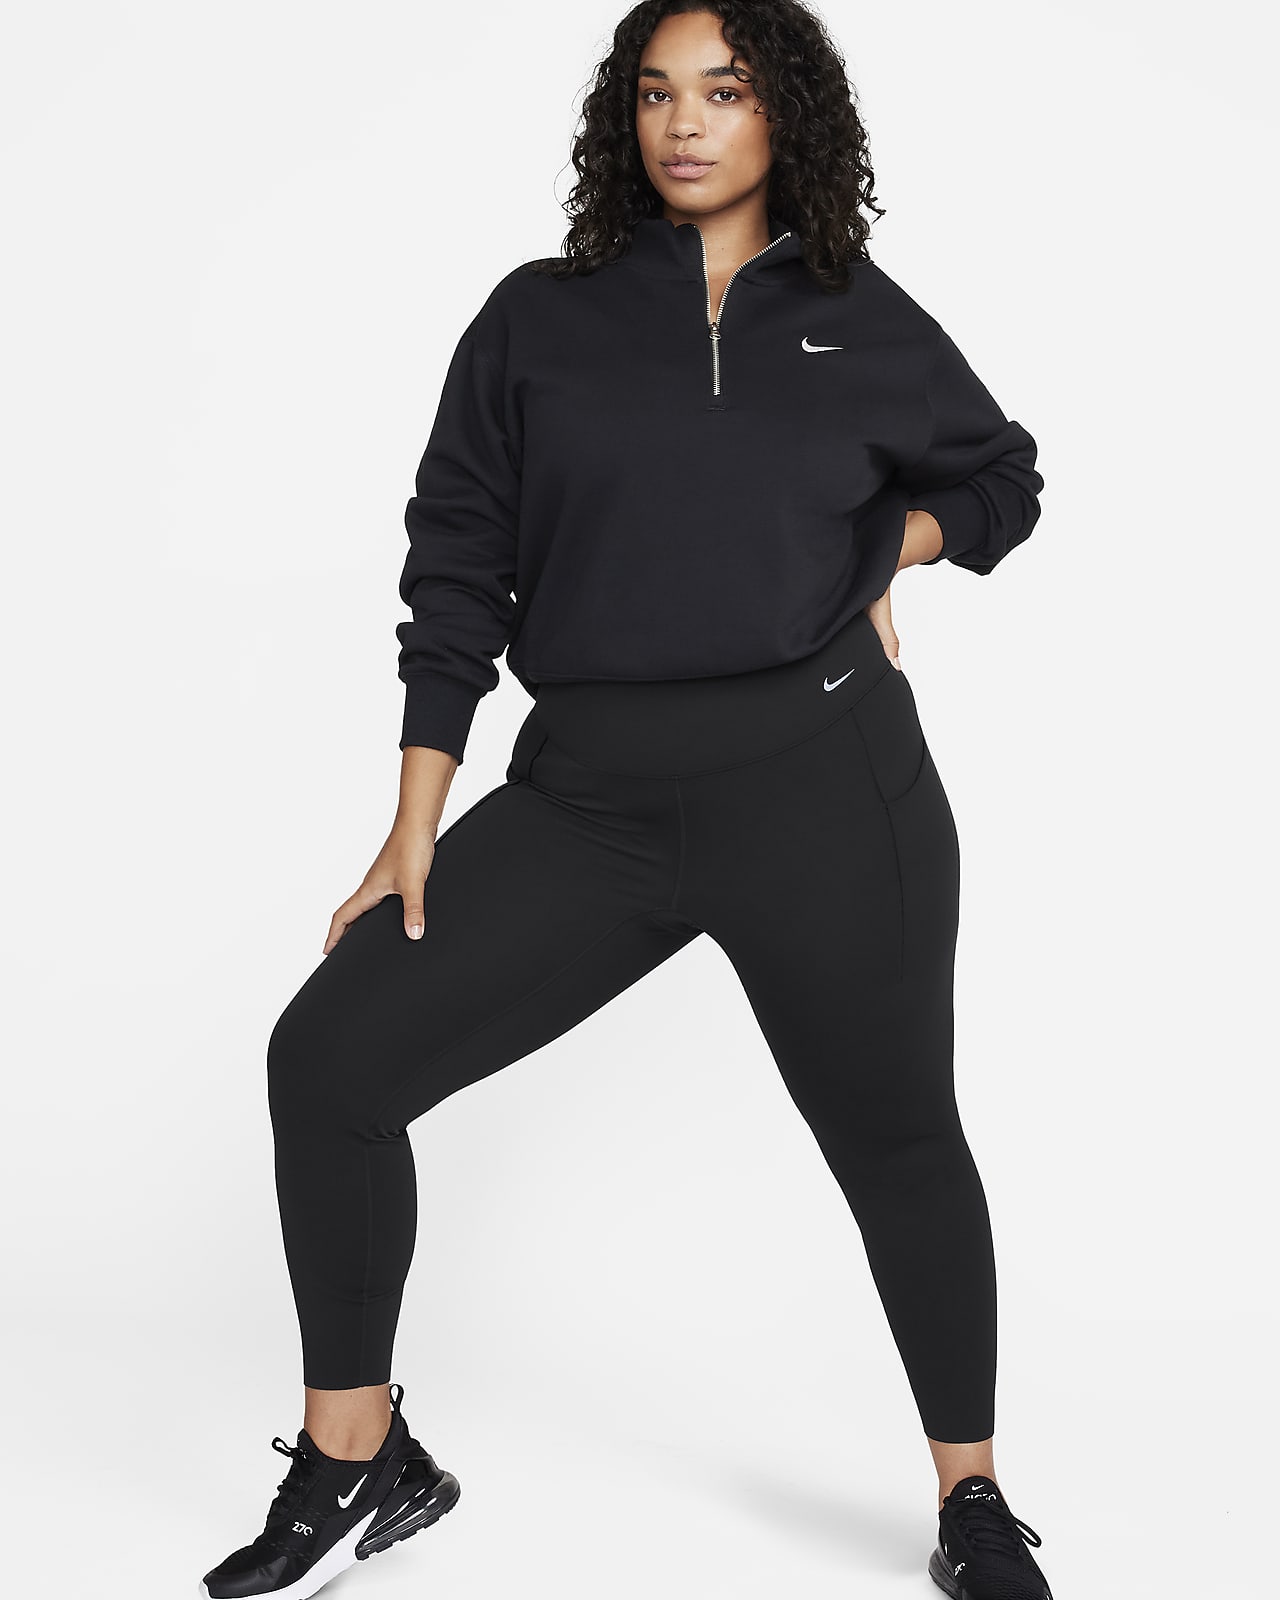 Leggings a tutta lunghezza a vita alta con tasche e sostegno medio Nike Universa (Plus size) – Donna